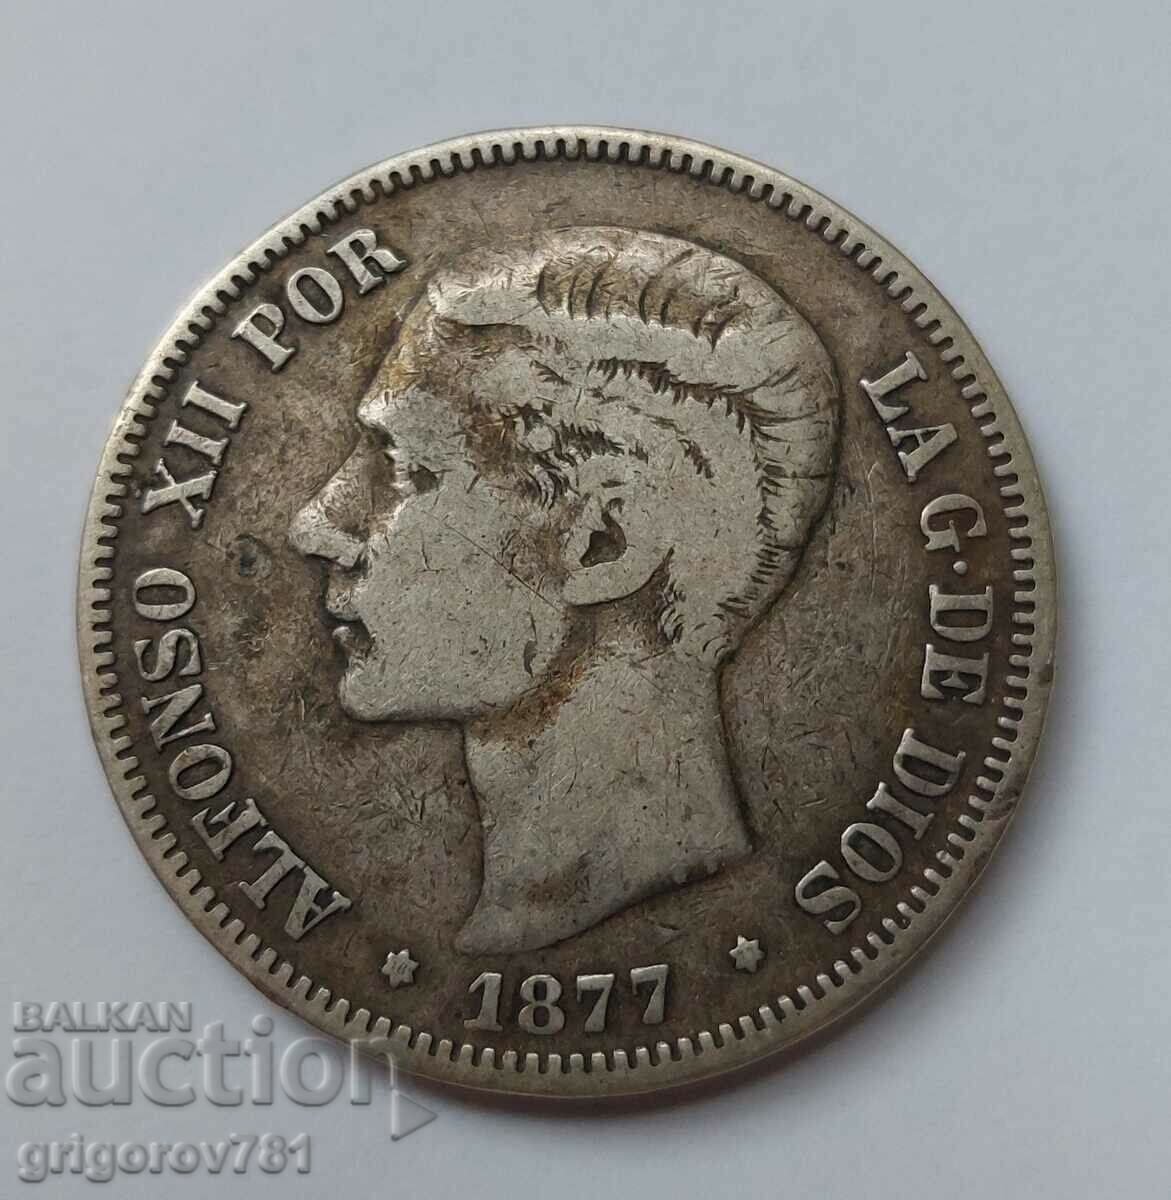 5 Pesetas Silver Spain 1877 - Silver Coin #246